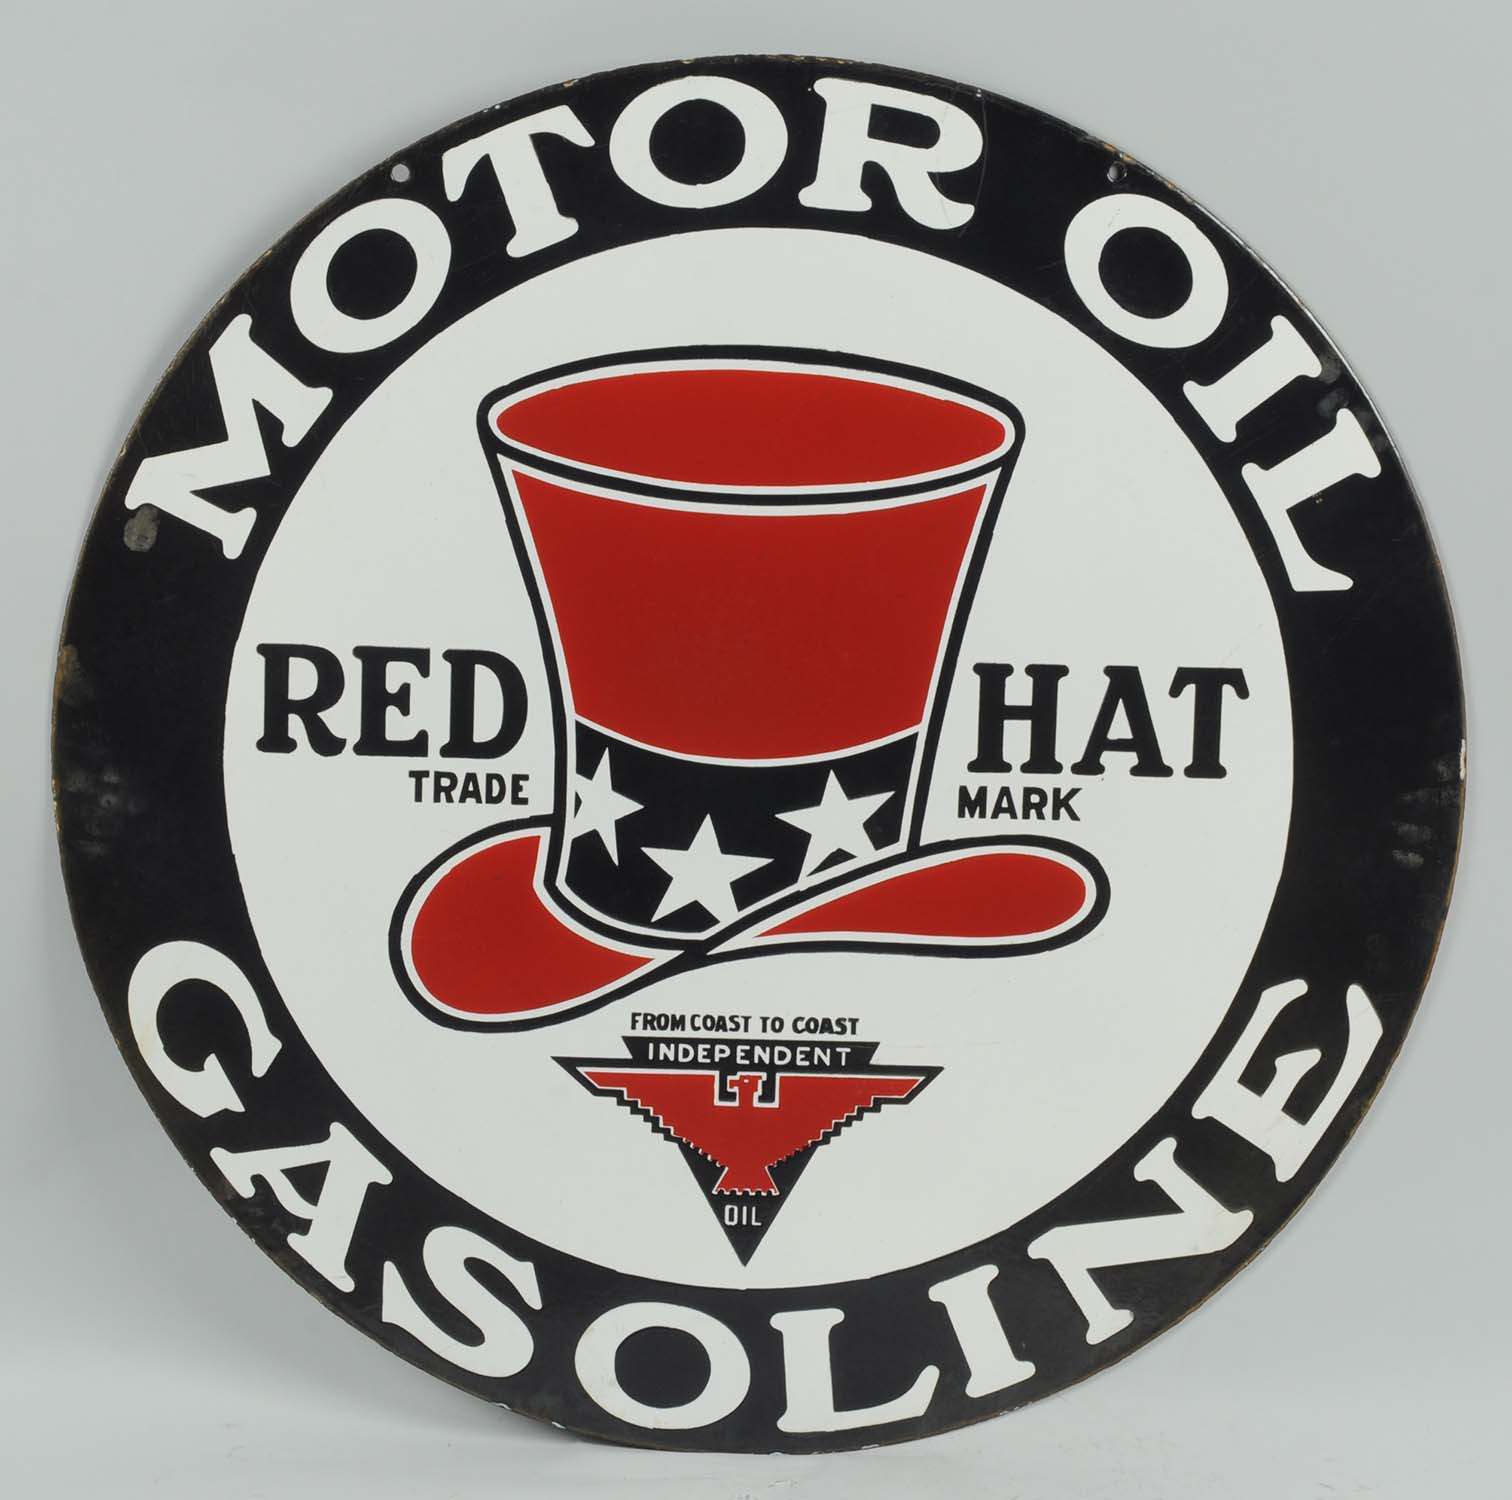 Lot #18, Red Hat Motor Oil & Gasoline Porcelain Sign, estimated at $15,000-$20,000.